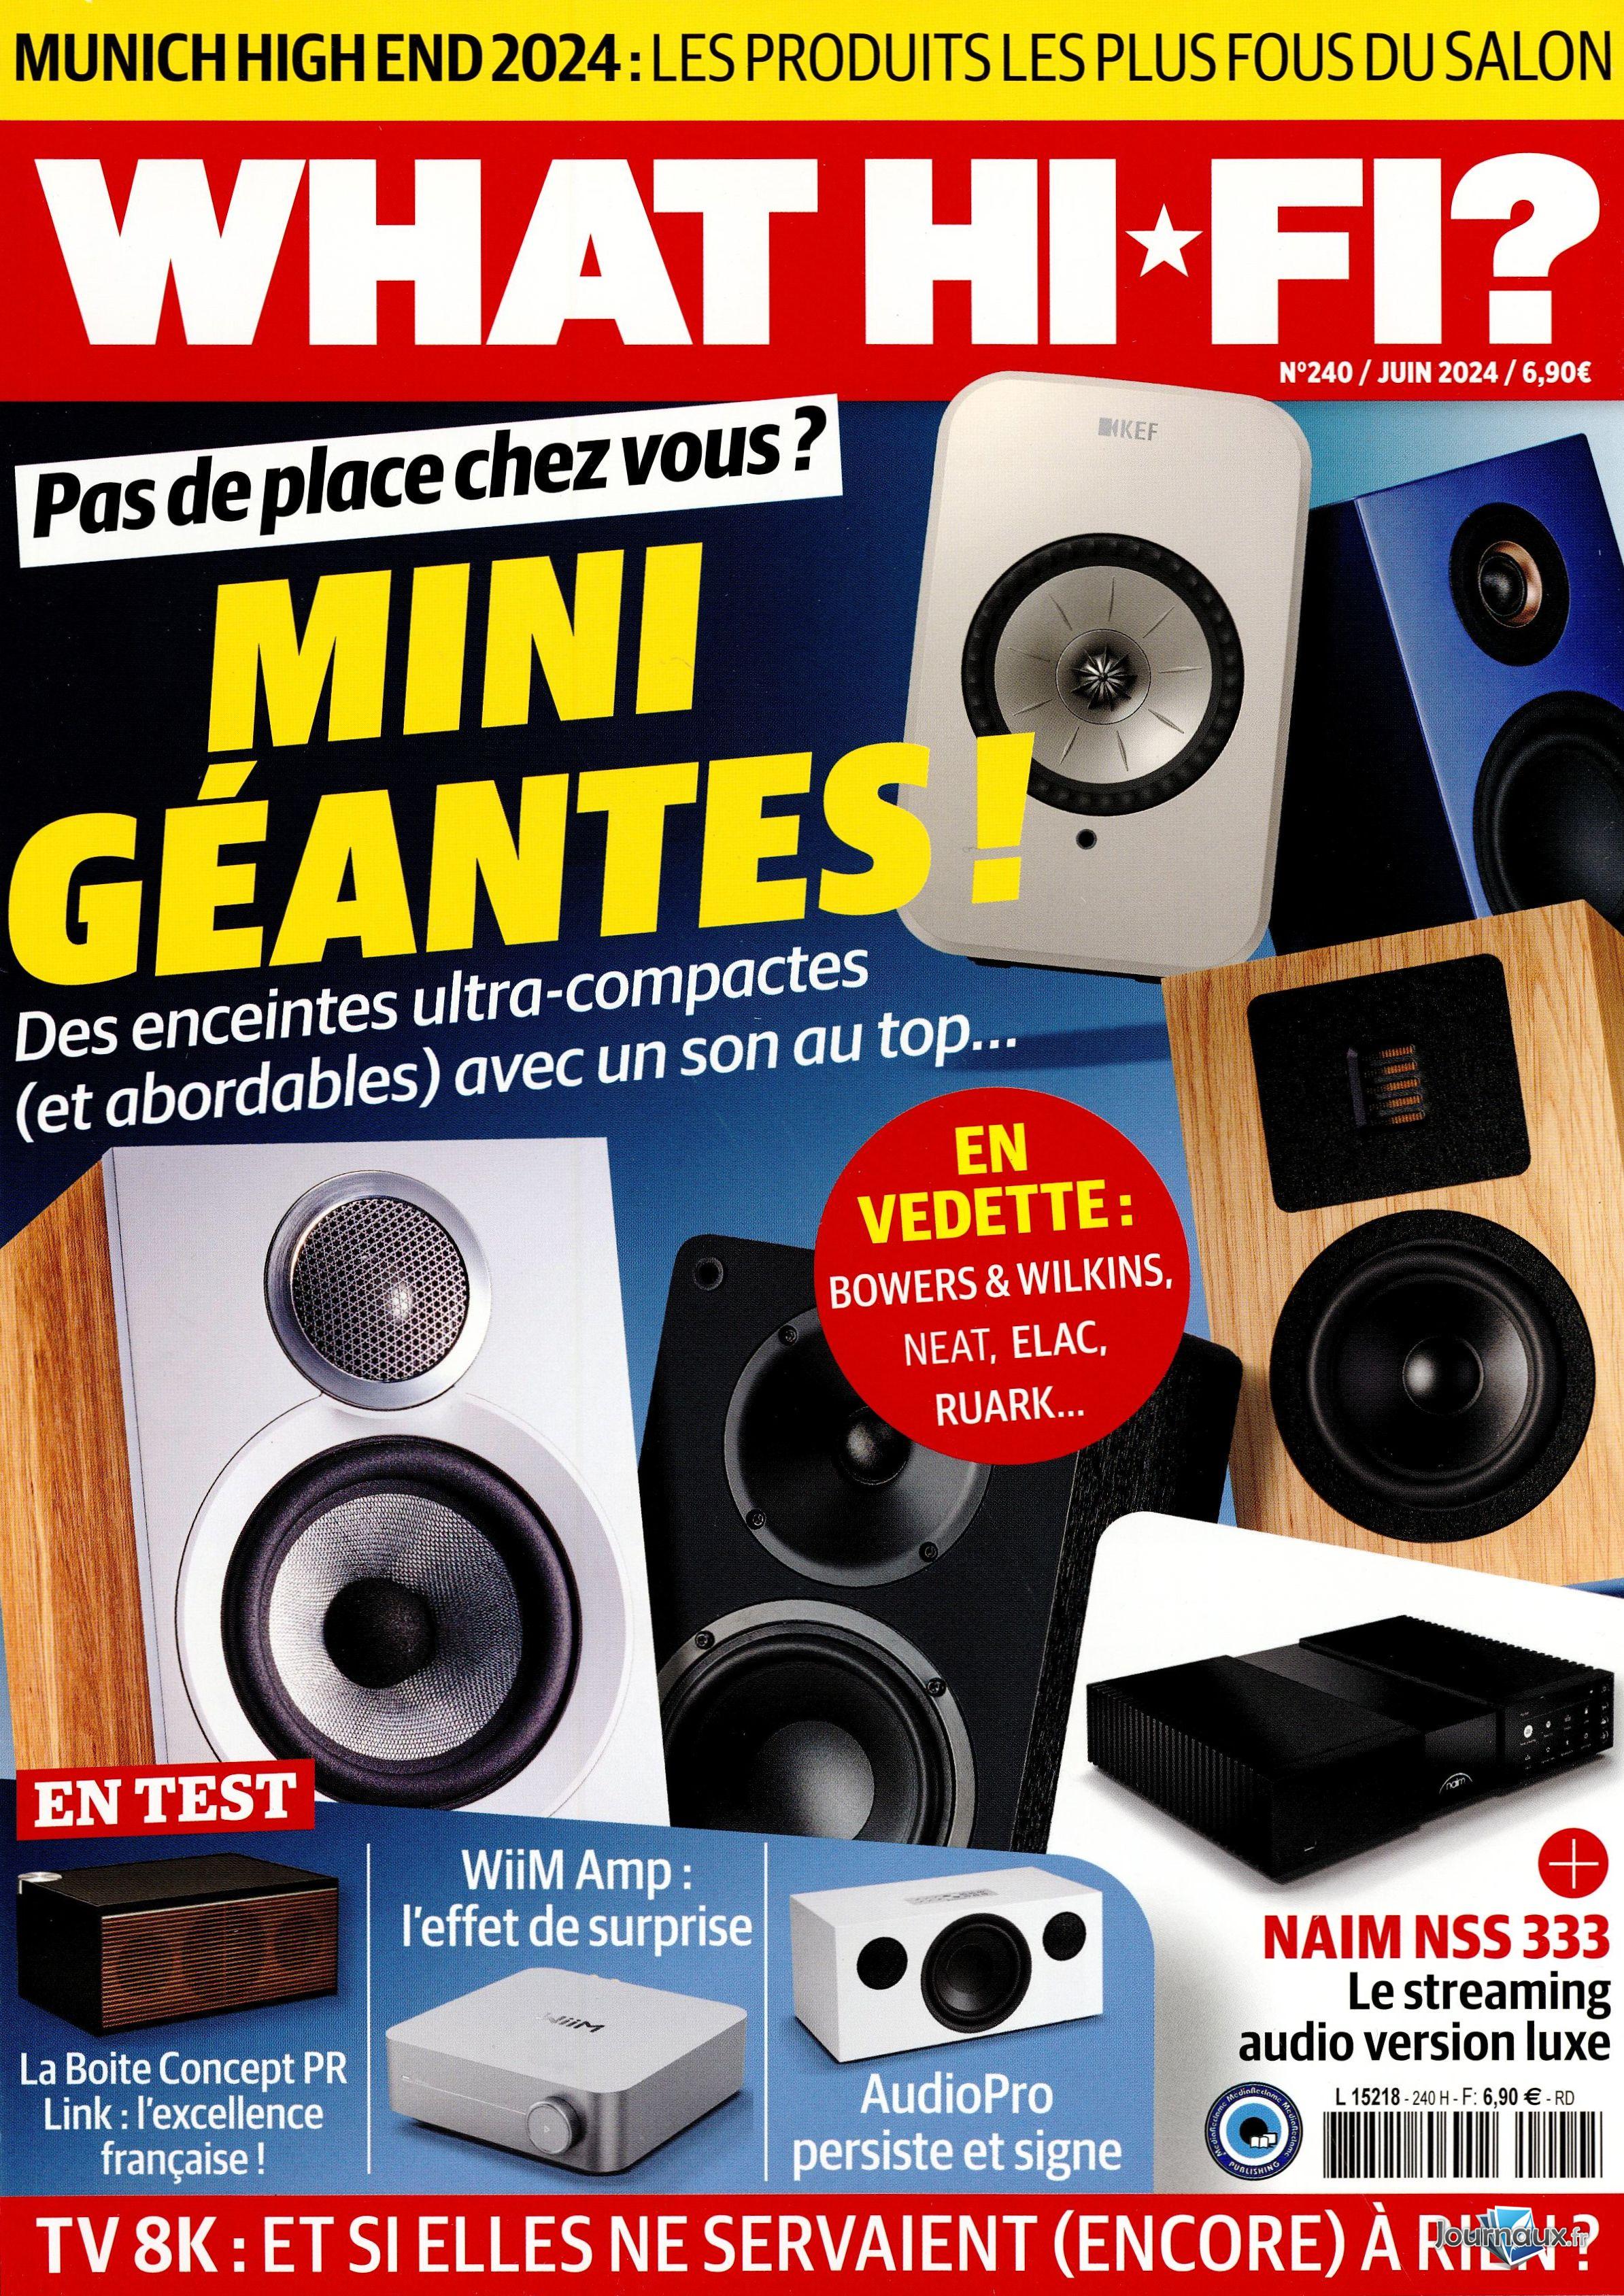 Les fondus du vinyl !!! {Saison 23} [TU] - Page : 302 - HiFi & Home Cinema  - Video & Son - FORUM HardWare.fr